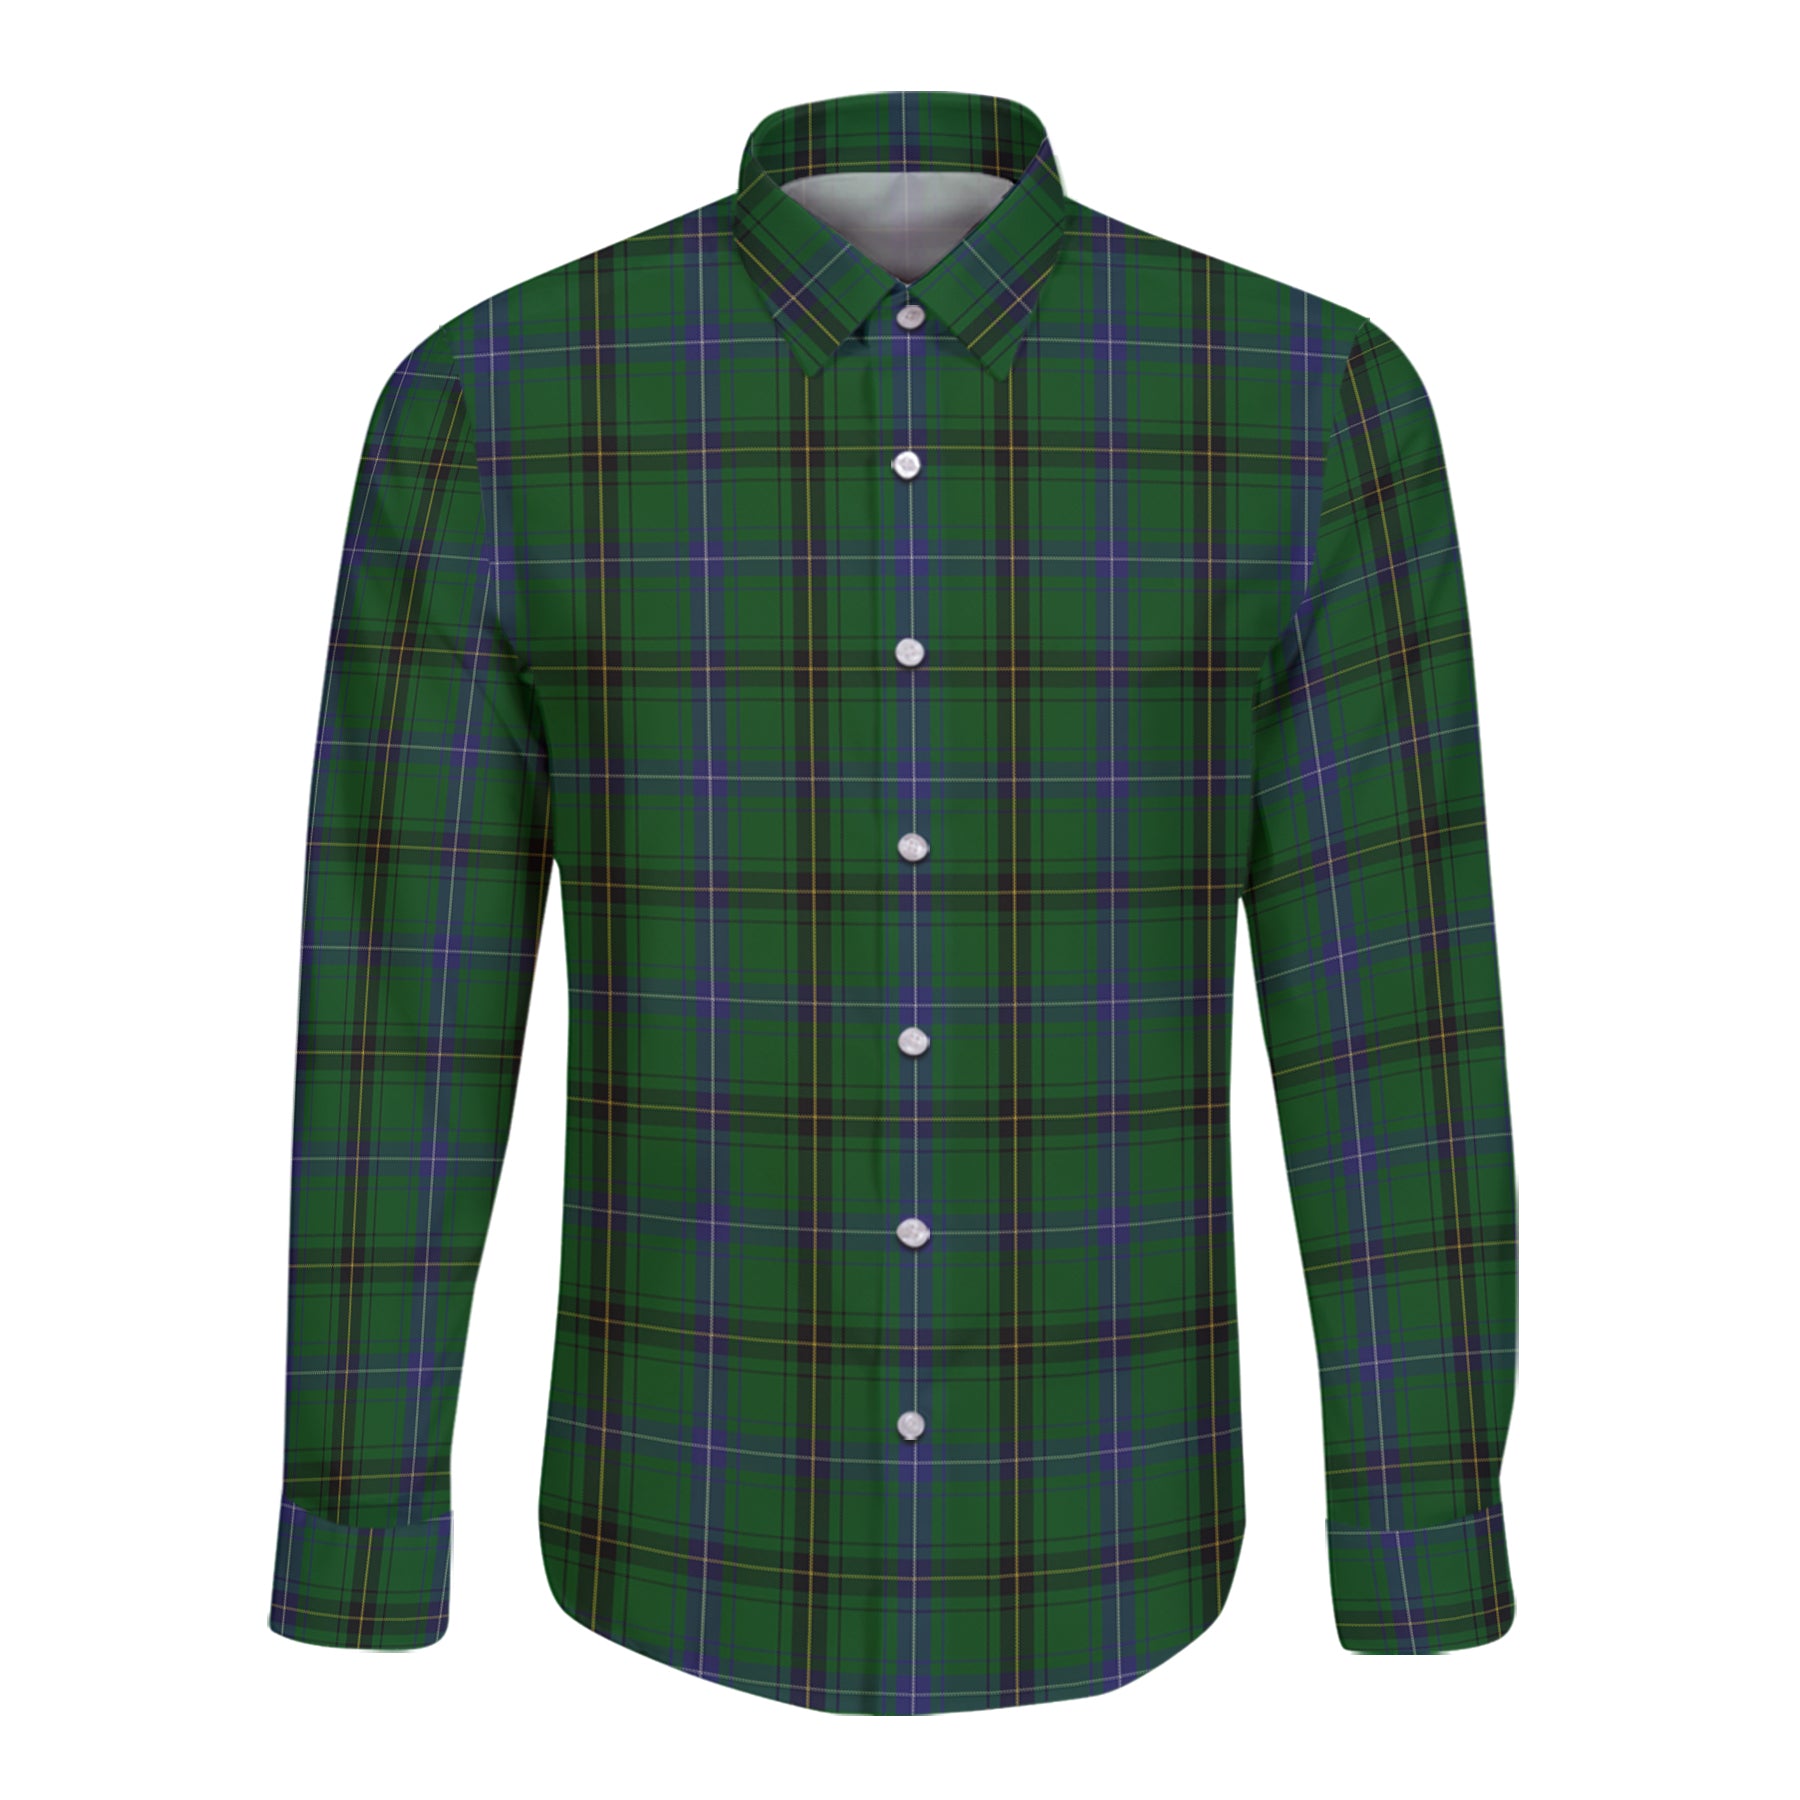 Mackendrick Tartan Long Sleeve Button Up Shirt K23